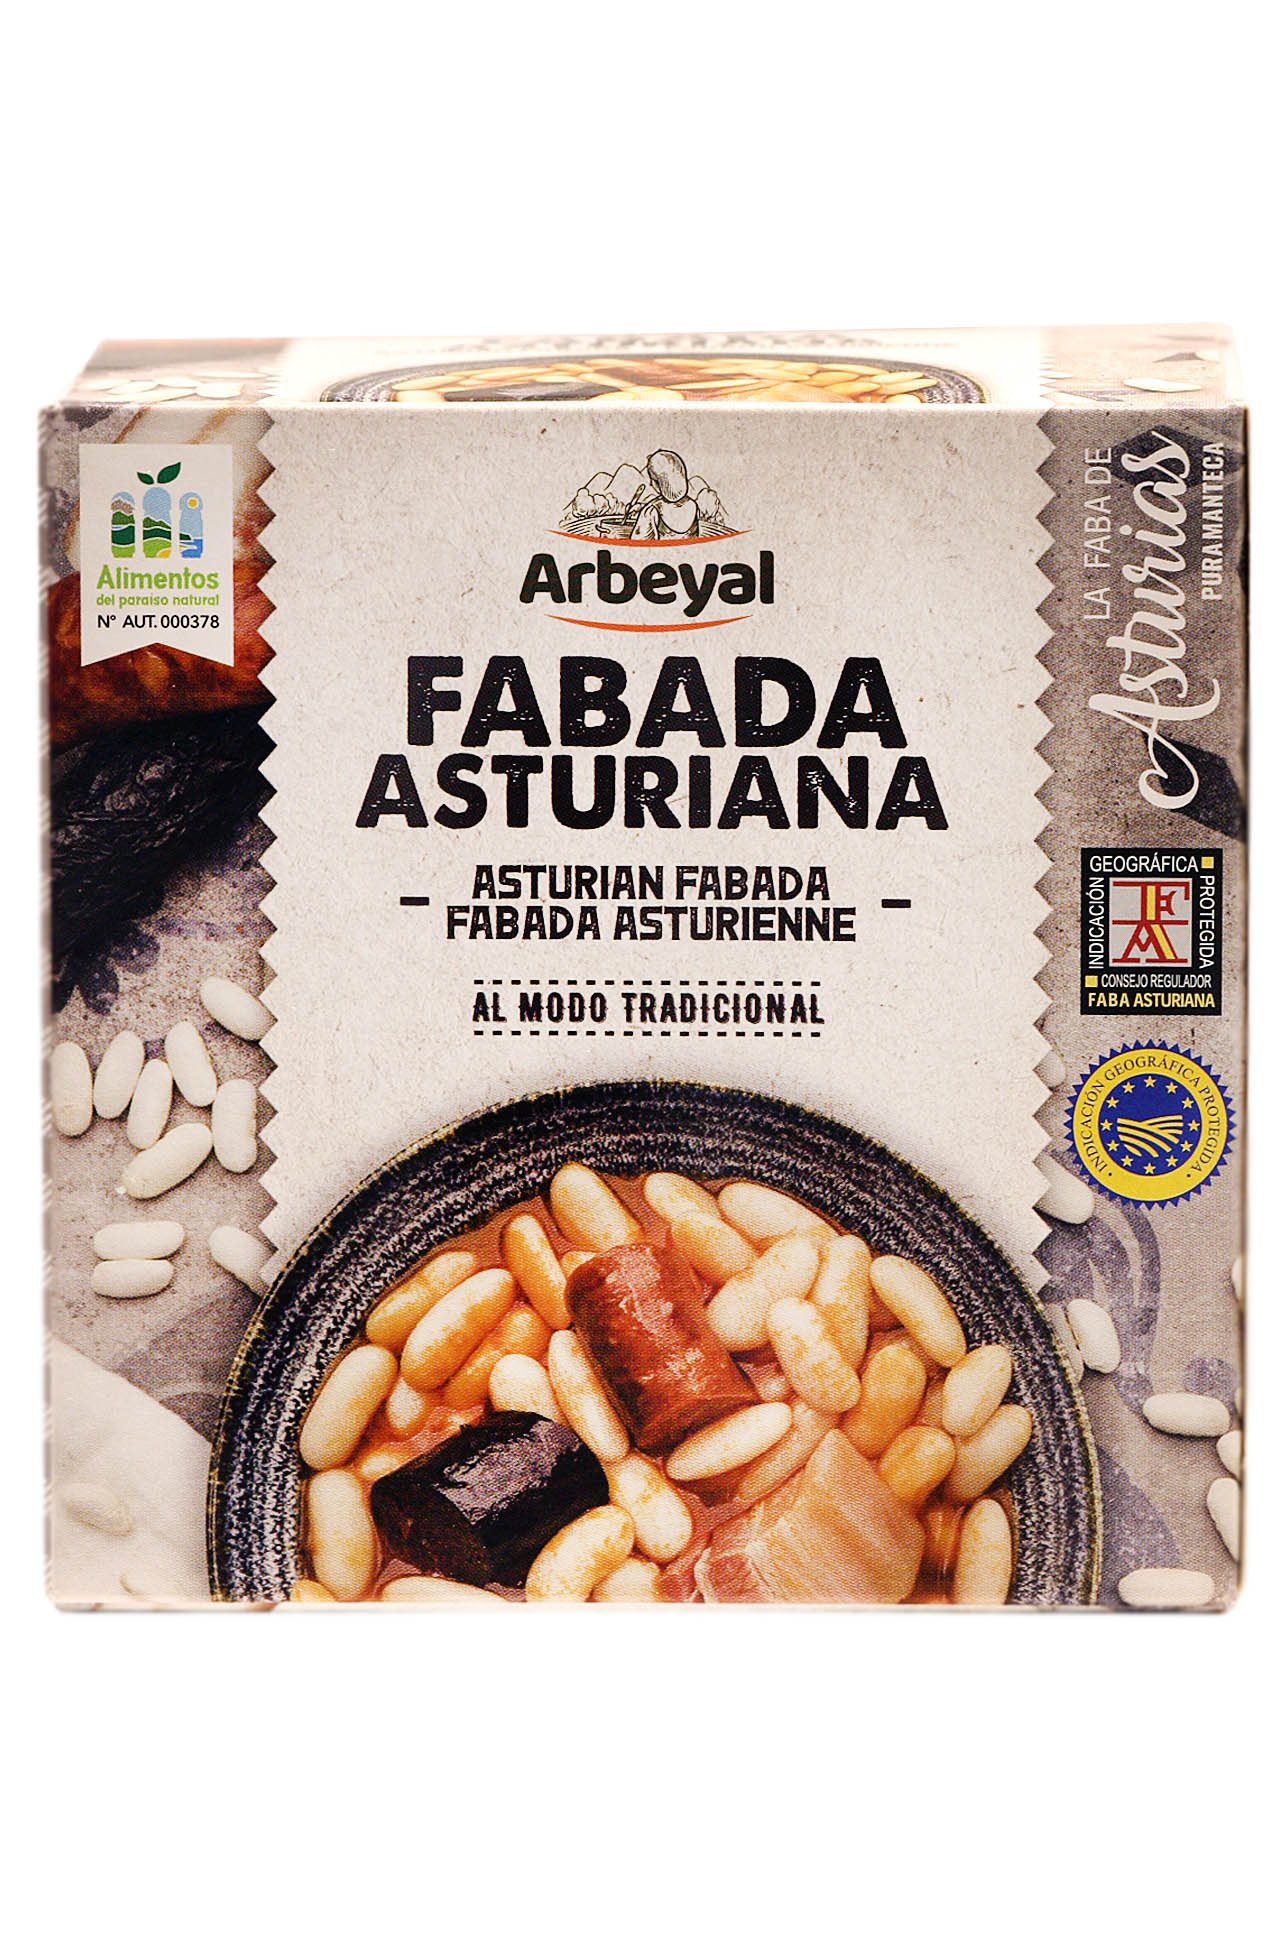 Fabada form Asturias